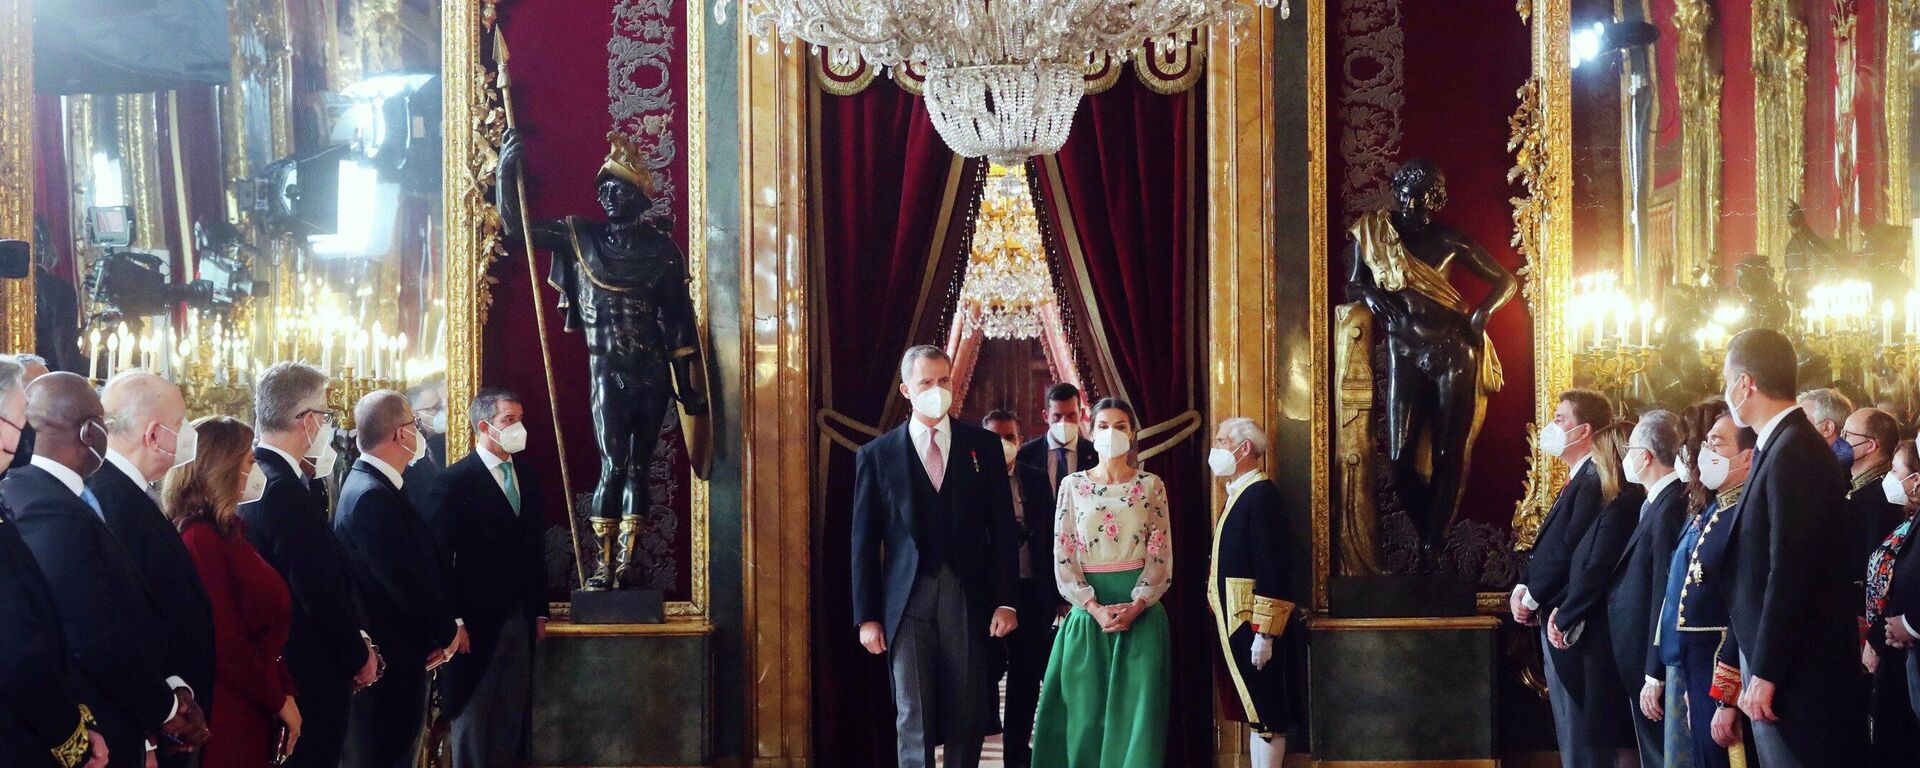 El rey de España, Felipe VI, y la reina Letizia durante la recepción del cuerpo diplomático celebrada en el Palacio Real - Sputnik Mundo, 1920, 17.01.2022